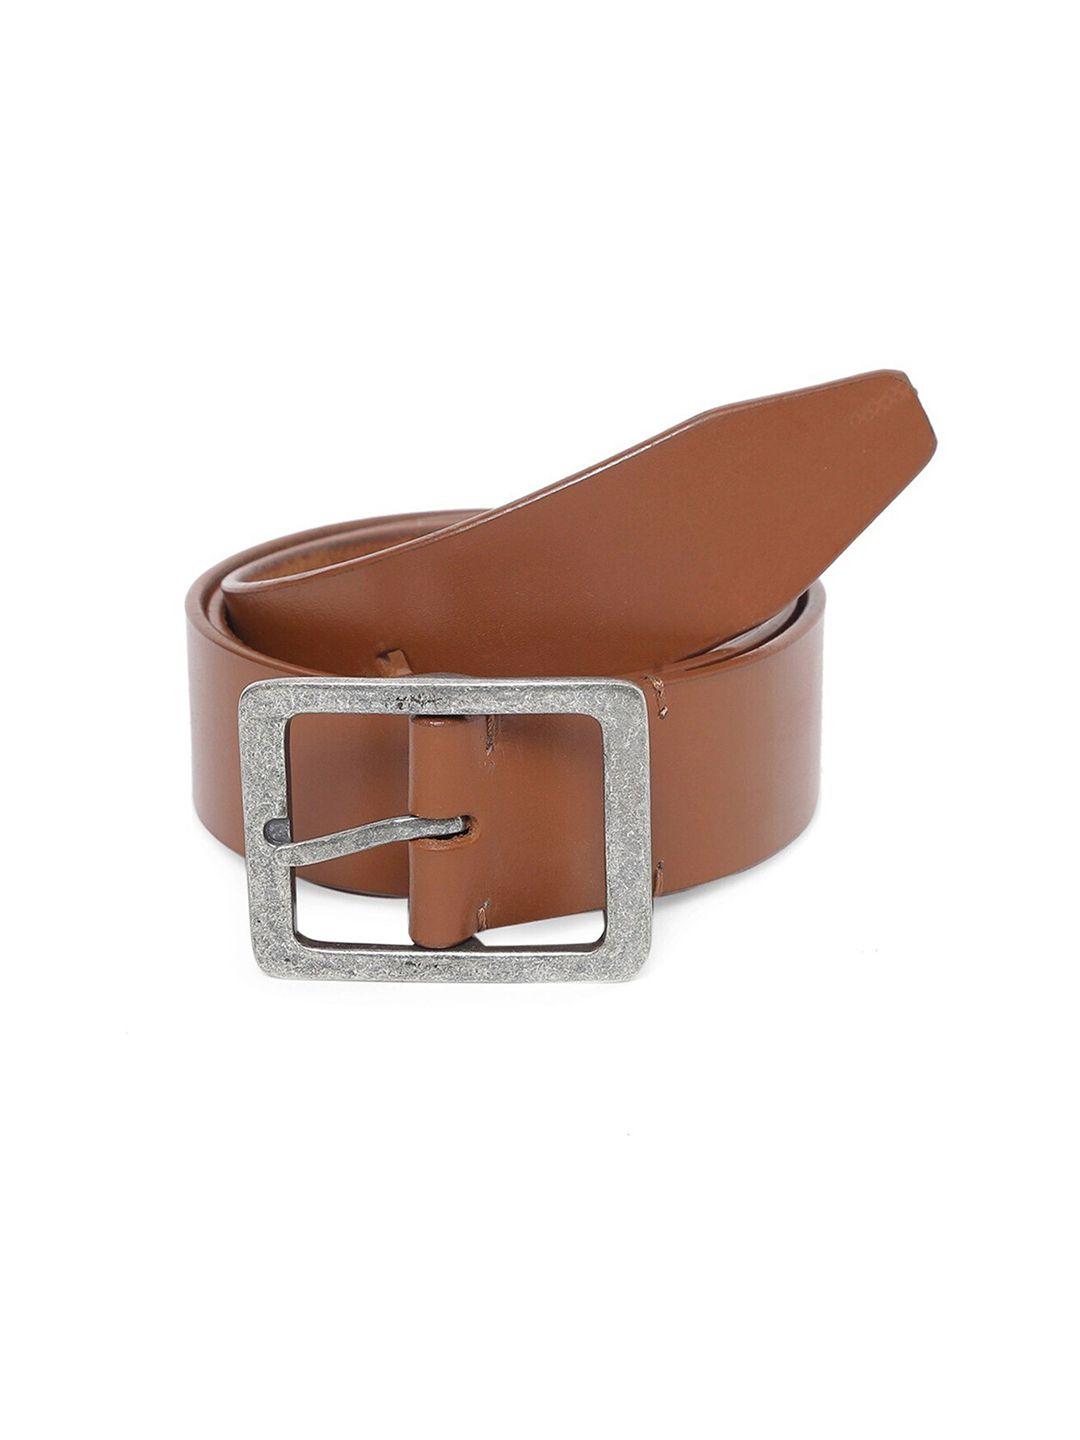 tom lang london men leather formal belt